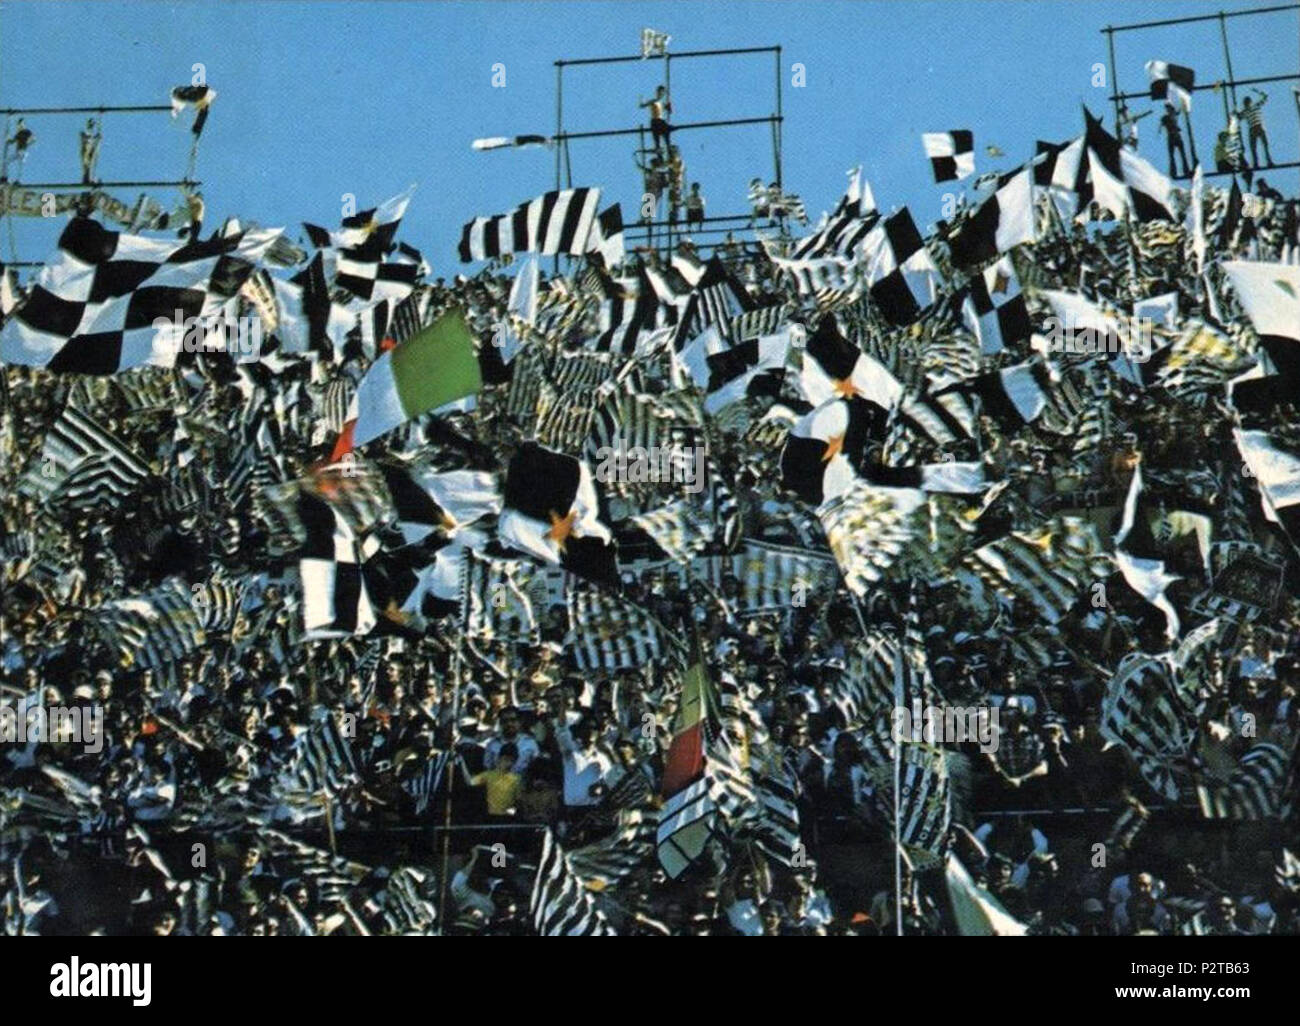 . Italiano: Torino, stadio Comunale, 1973 circa. Tifosi della Juventus in curva Filadelfia. circa 1973. Unknown 85 Supporters of Juventus FC - Stadio Comunale, Turin (circa 1973) Stock Photo